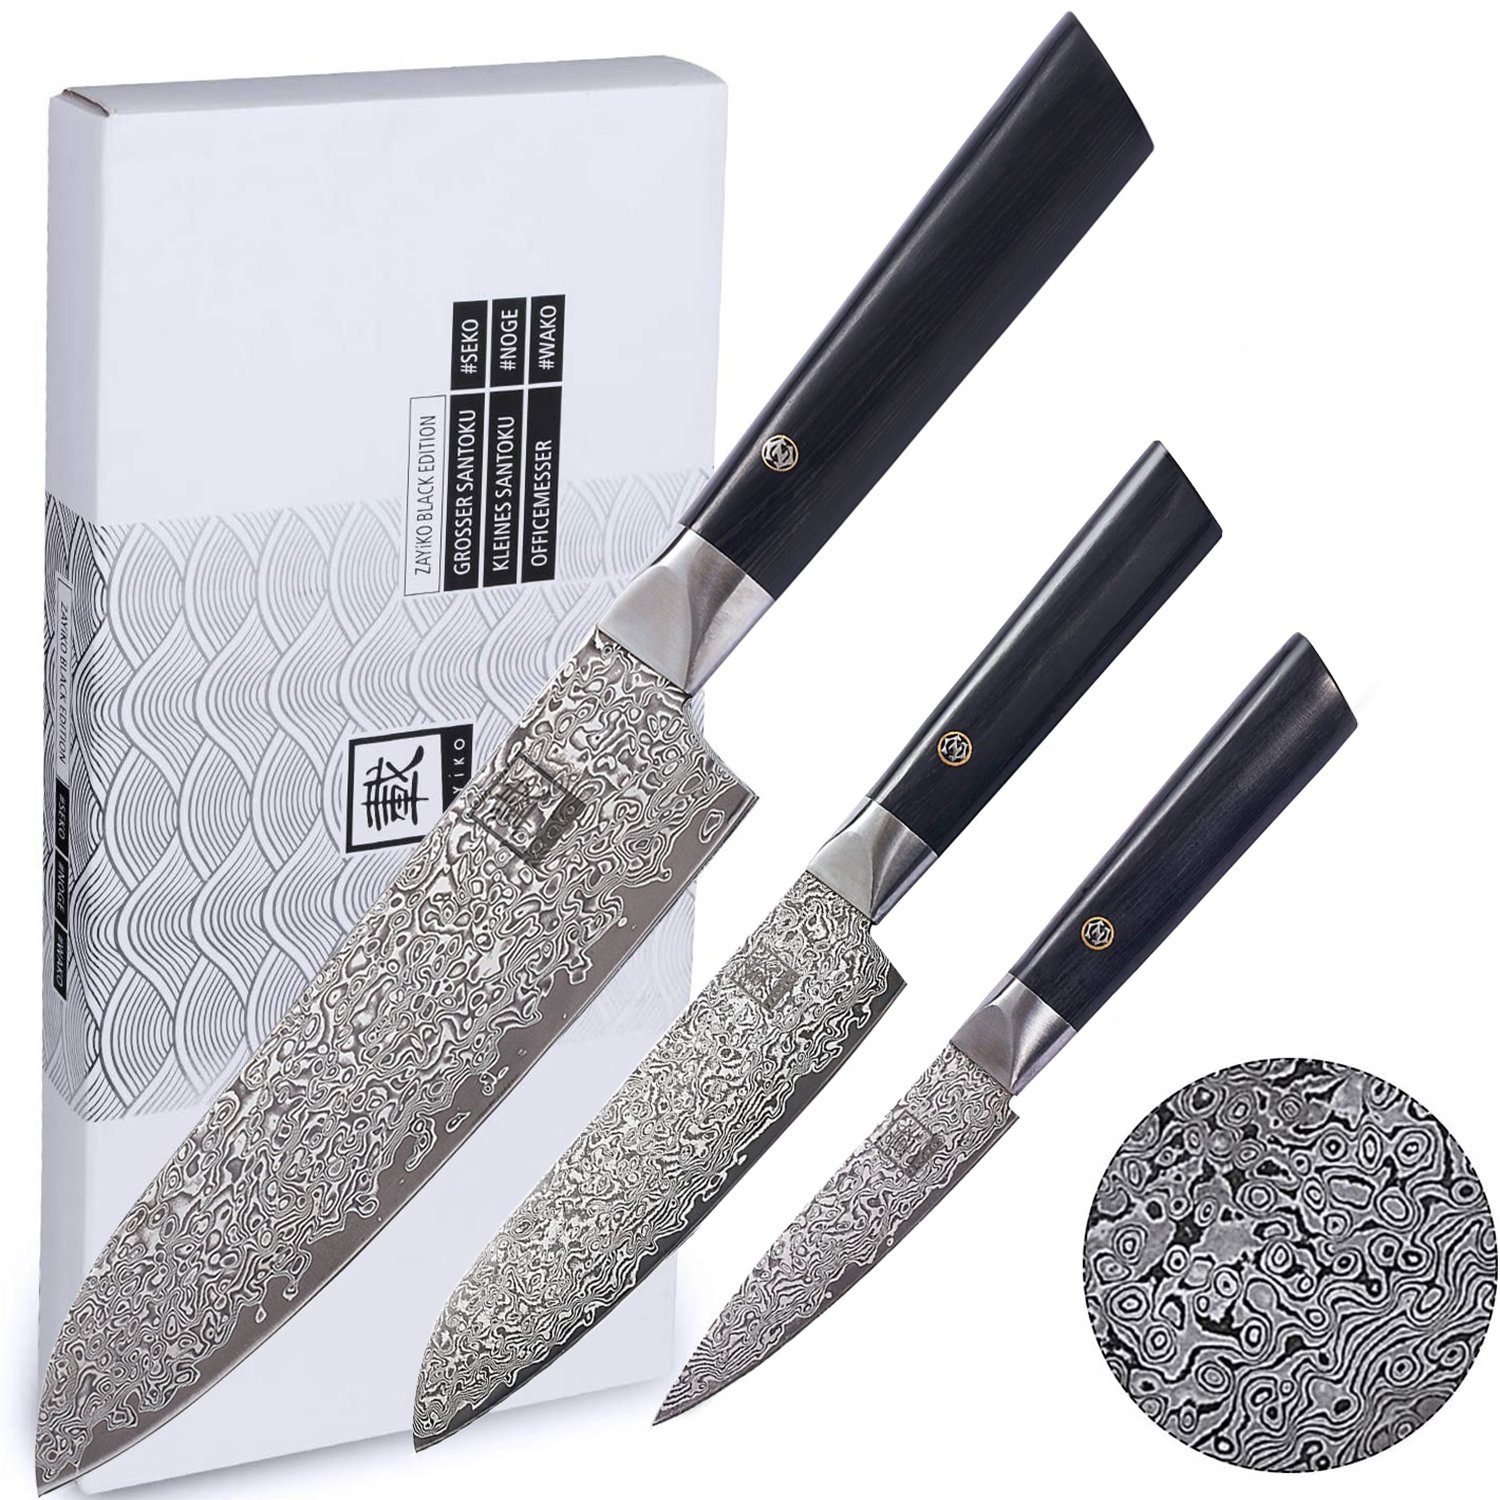 Klingen I Black Pakkah, I ZAYIKO dunkler Damaststahl 9-18cm Edition 3er Messer-Set Damast Messerset I dunkler